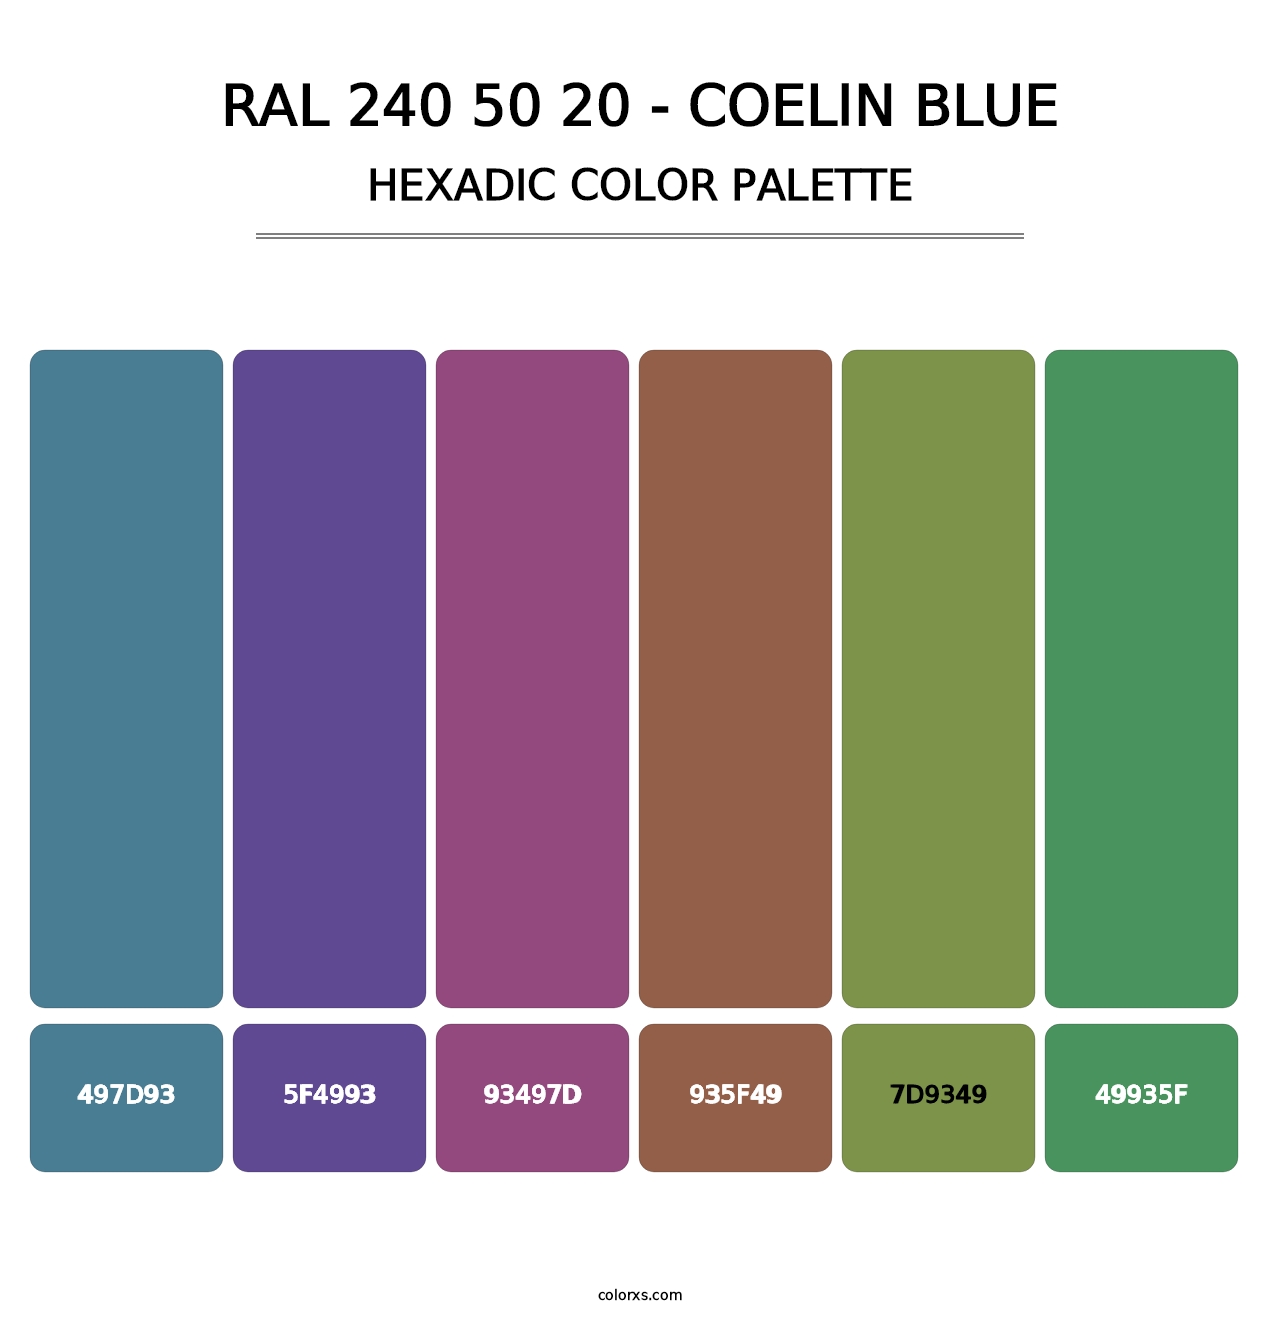 RAL 240 50 20 - Coelin Blue - Hexadic Color Palette